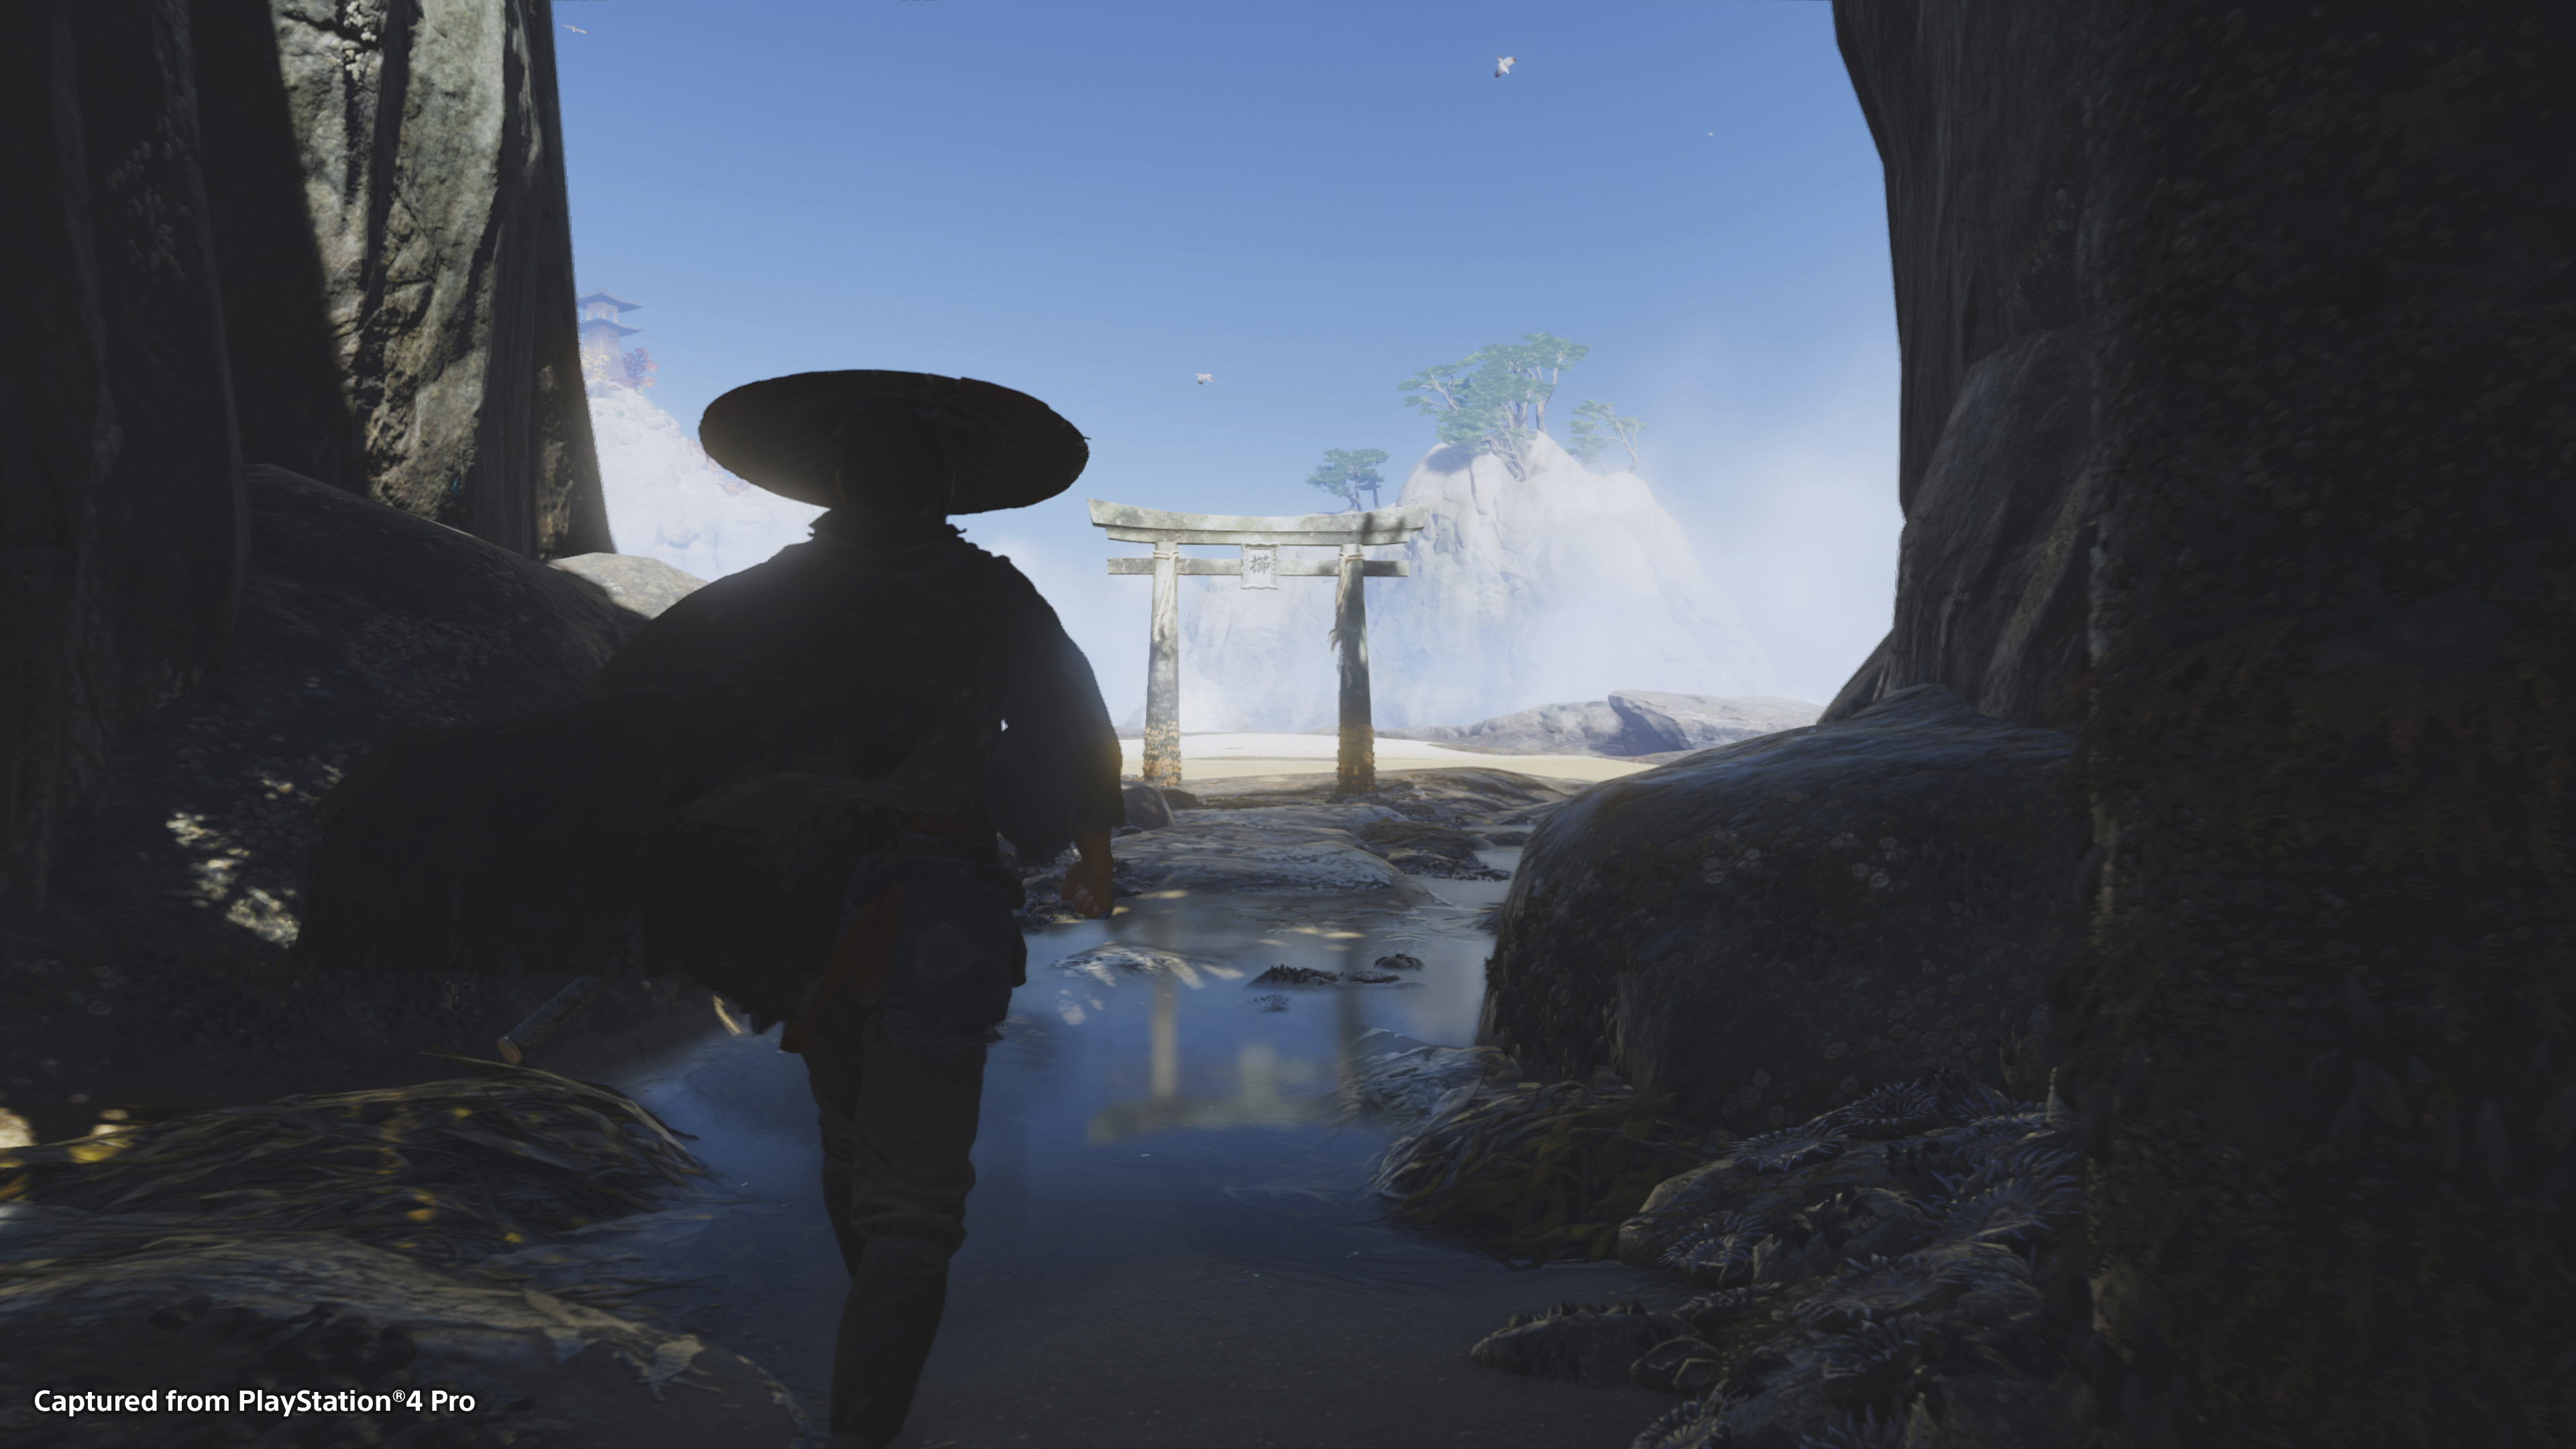 لقطة شاشة لتجربة لعب لعبة Ghost of Tsushima تعرض ظلاً للشخصية الرئيسية Jin Sakai مع خلفية سماء زرقاء زاهية.